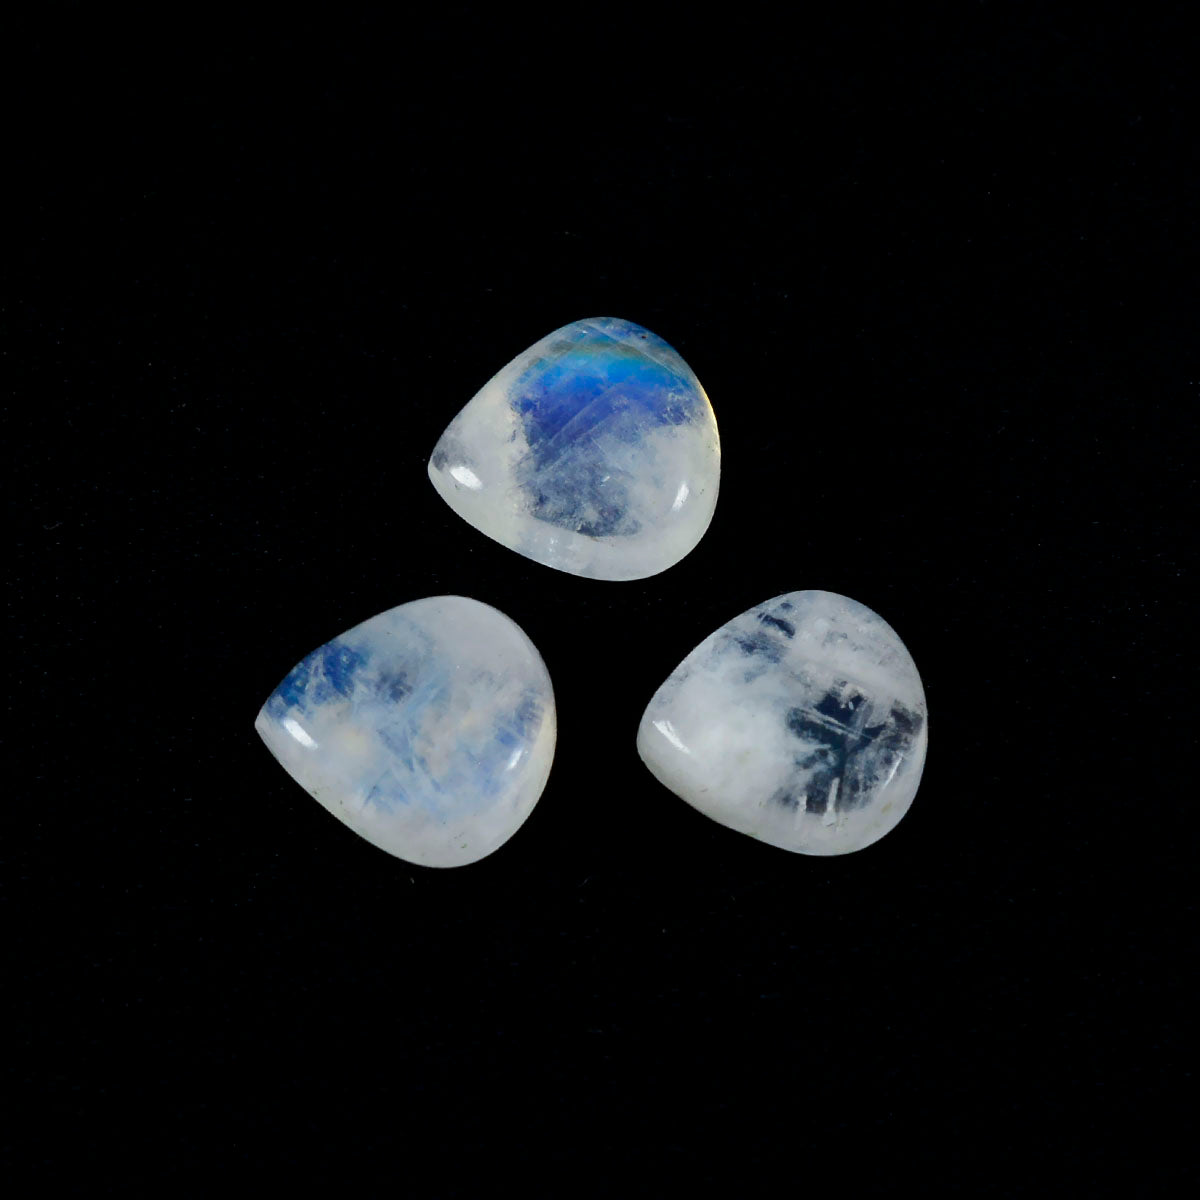 Riyogems 1 Stück weißer Regenbogen-Mondstein-Cabochon, 11 x 11 mm, herzförmig, Schönheitsqualität, loser Stein